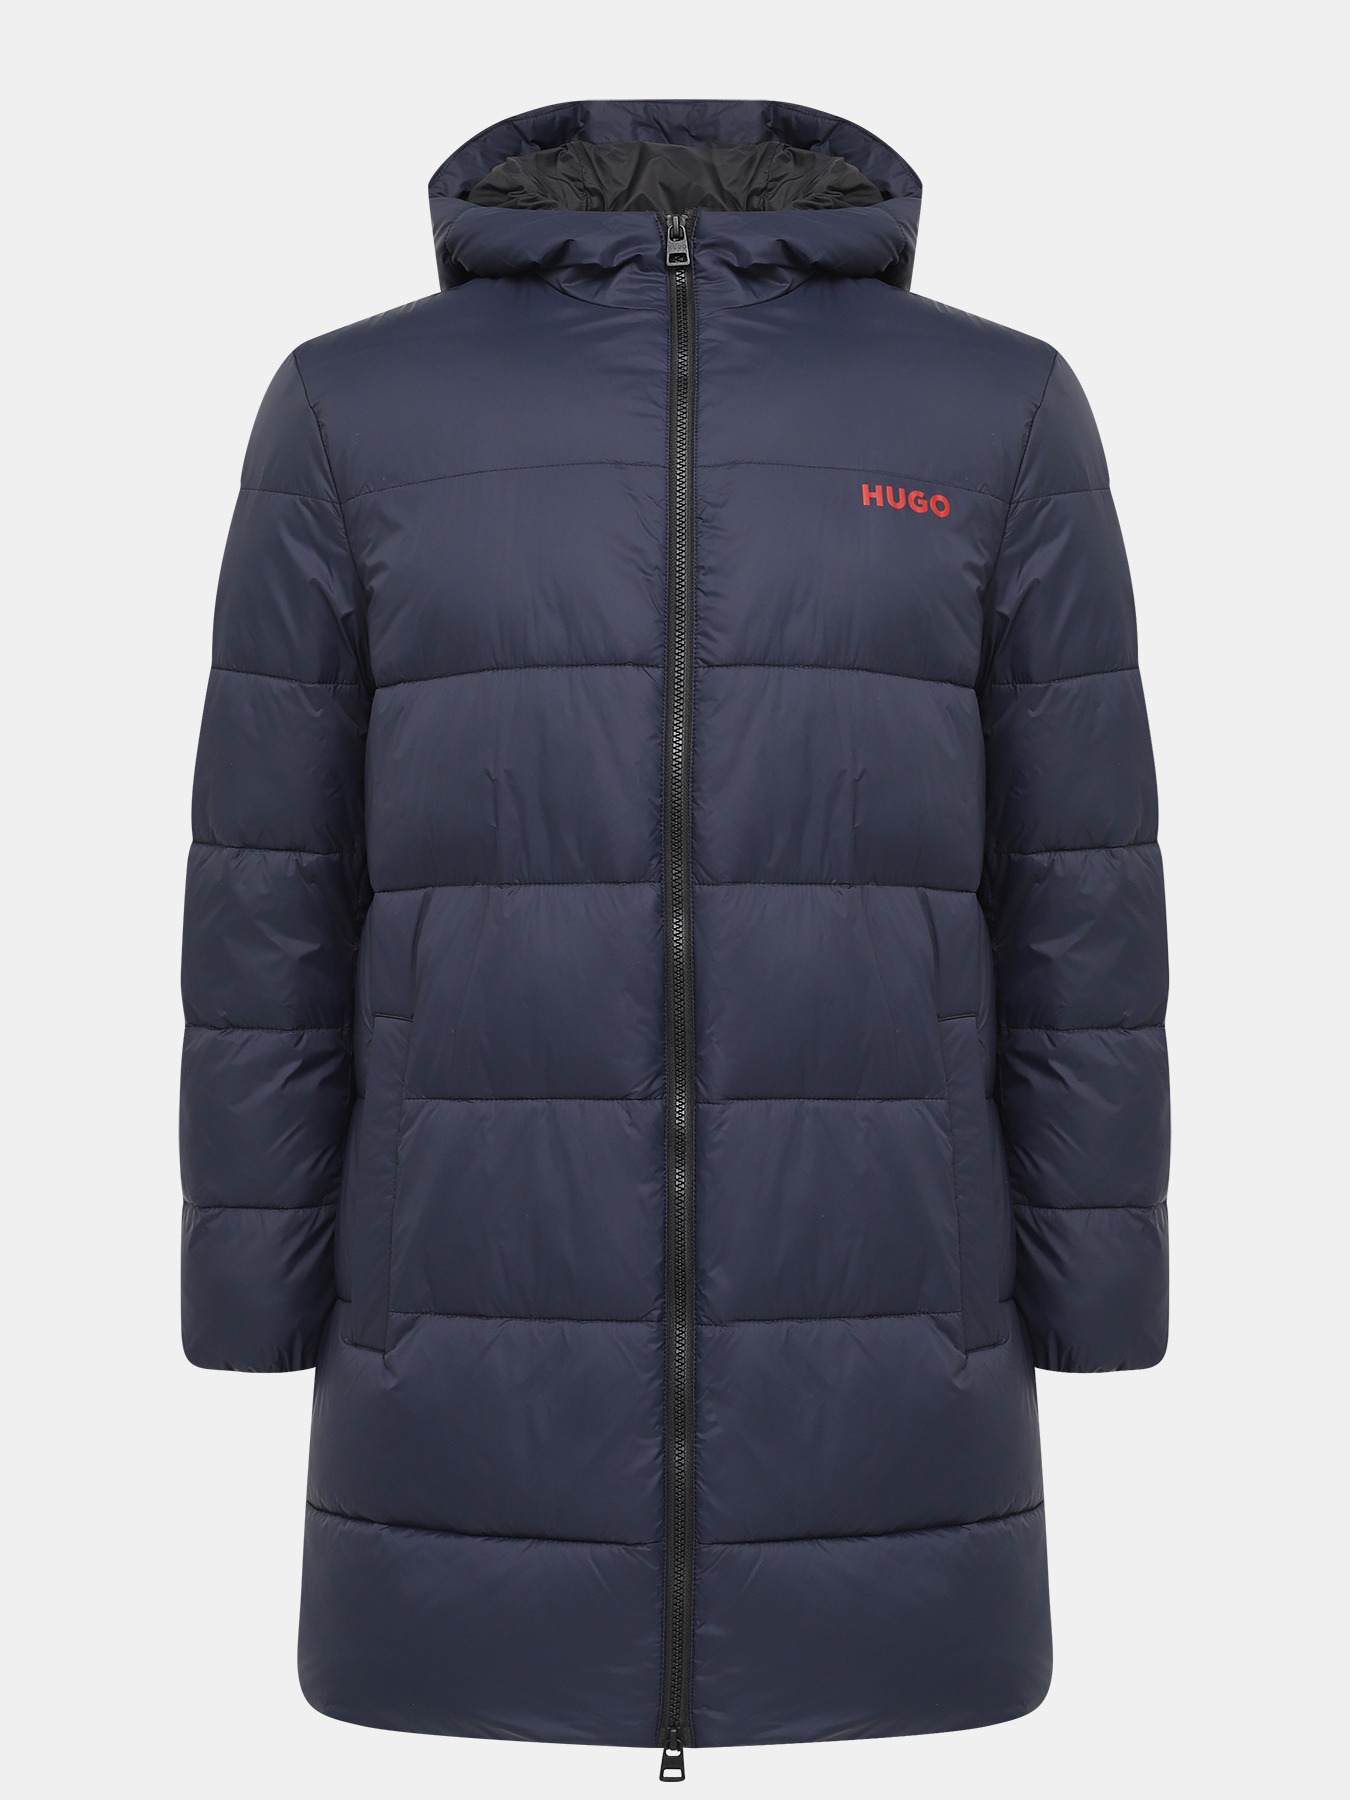 Удлиненная куртка Mati HUGO 426056-044, цвет темно-синий, размер 50-52 - фото 1